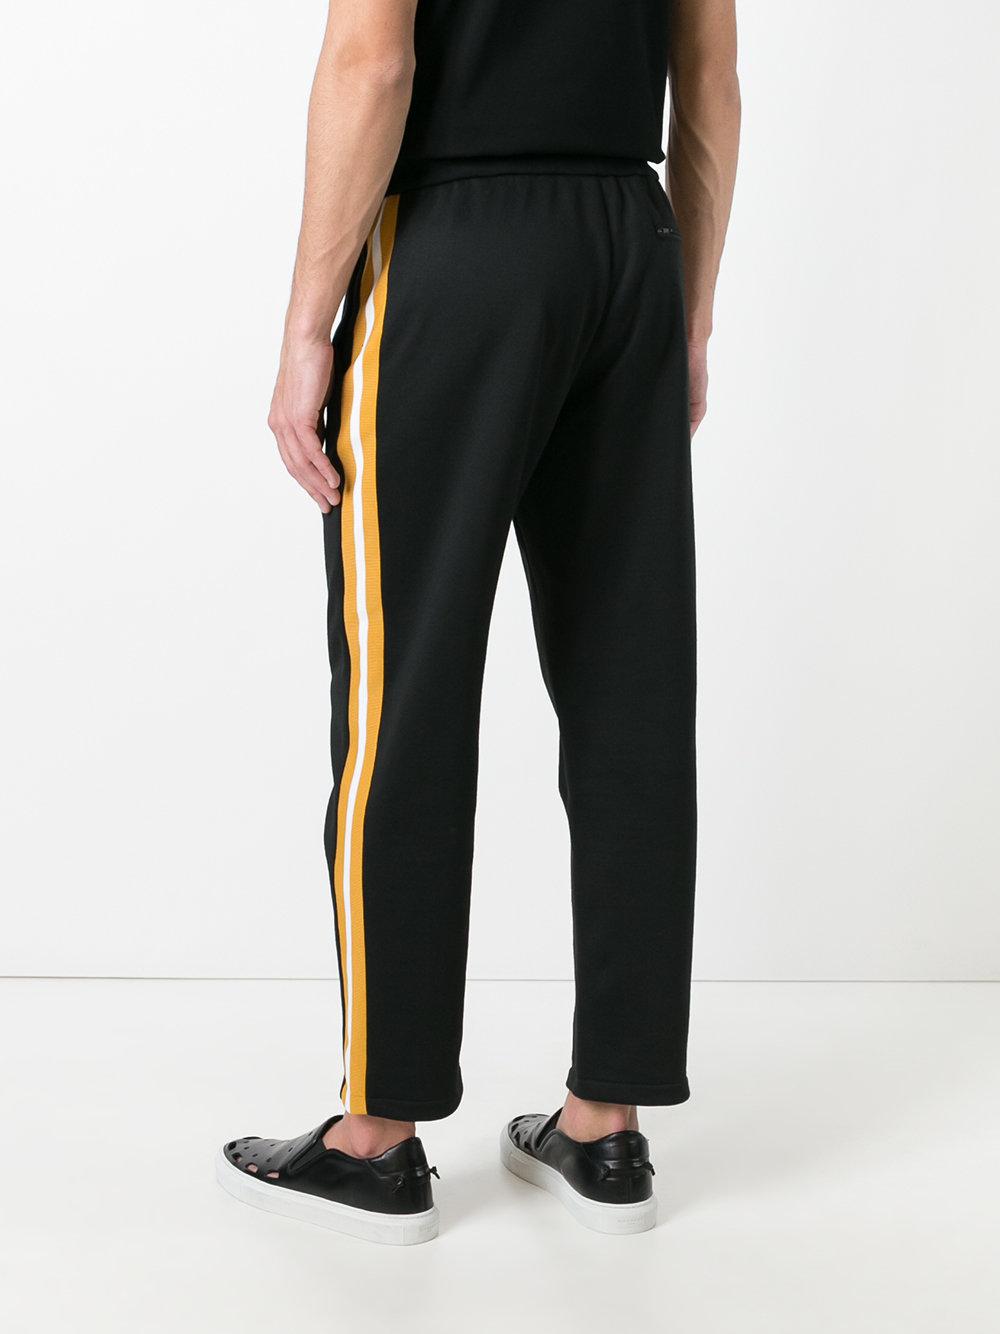 Lyst - Golden Goose Deluxe Brand Fleece Track Pants in Black for Men